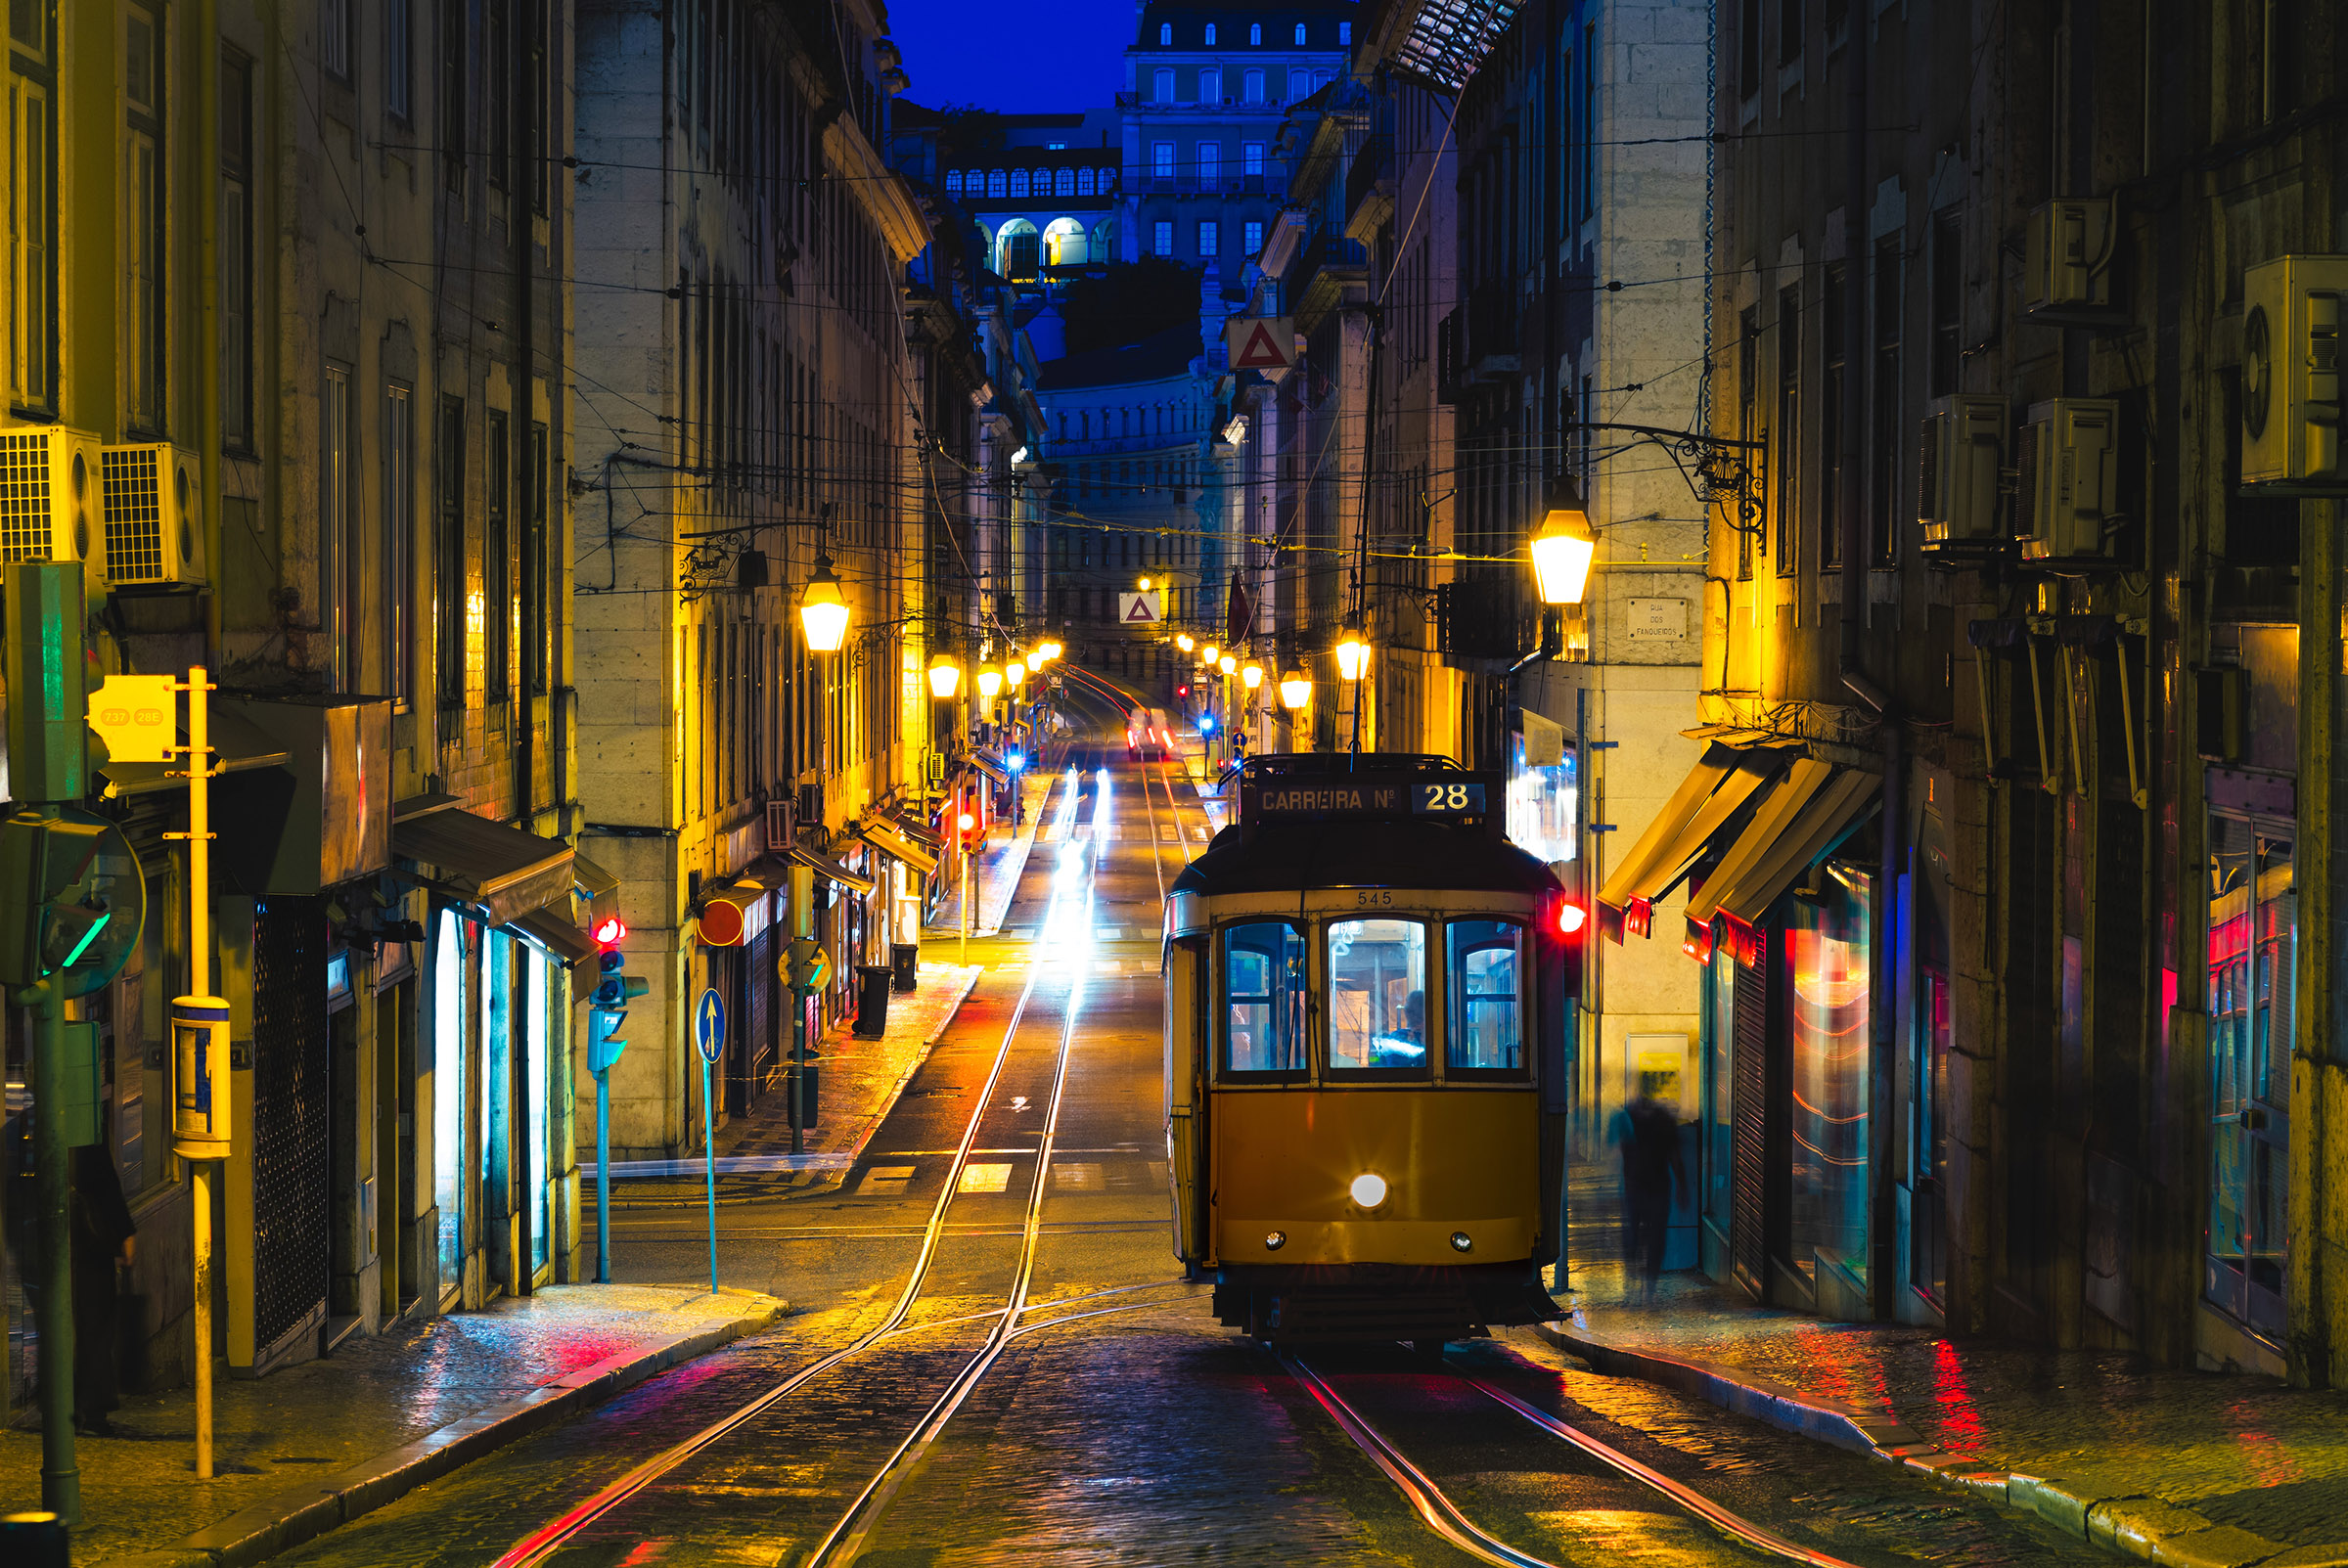 Historische tram 28 in Lissabon, Portugal bij nacht